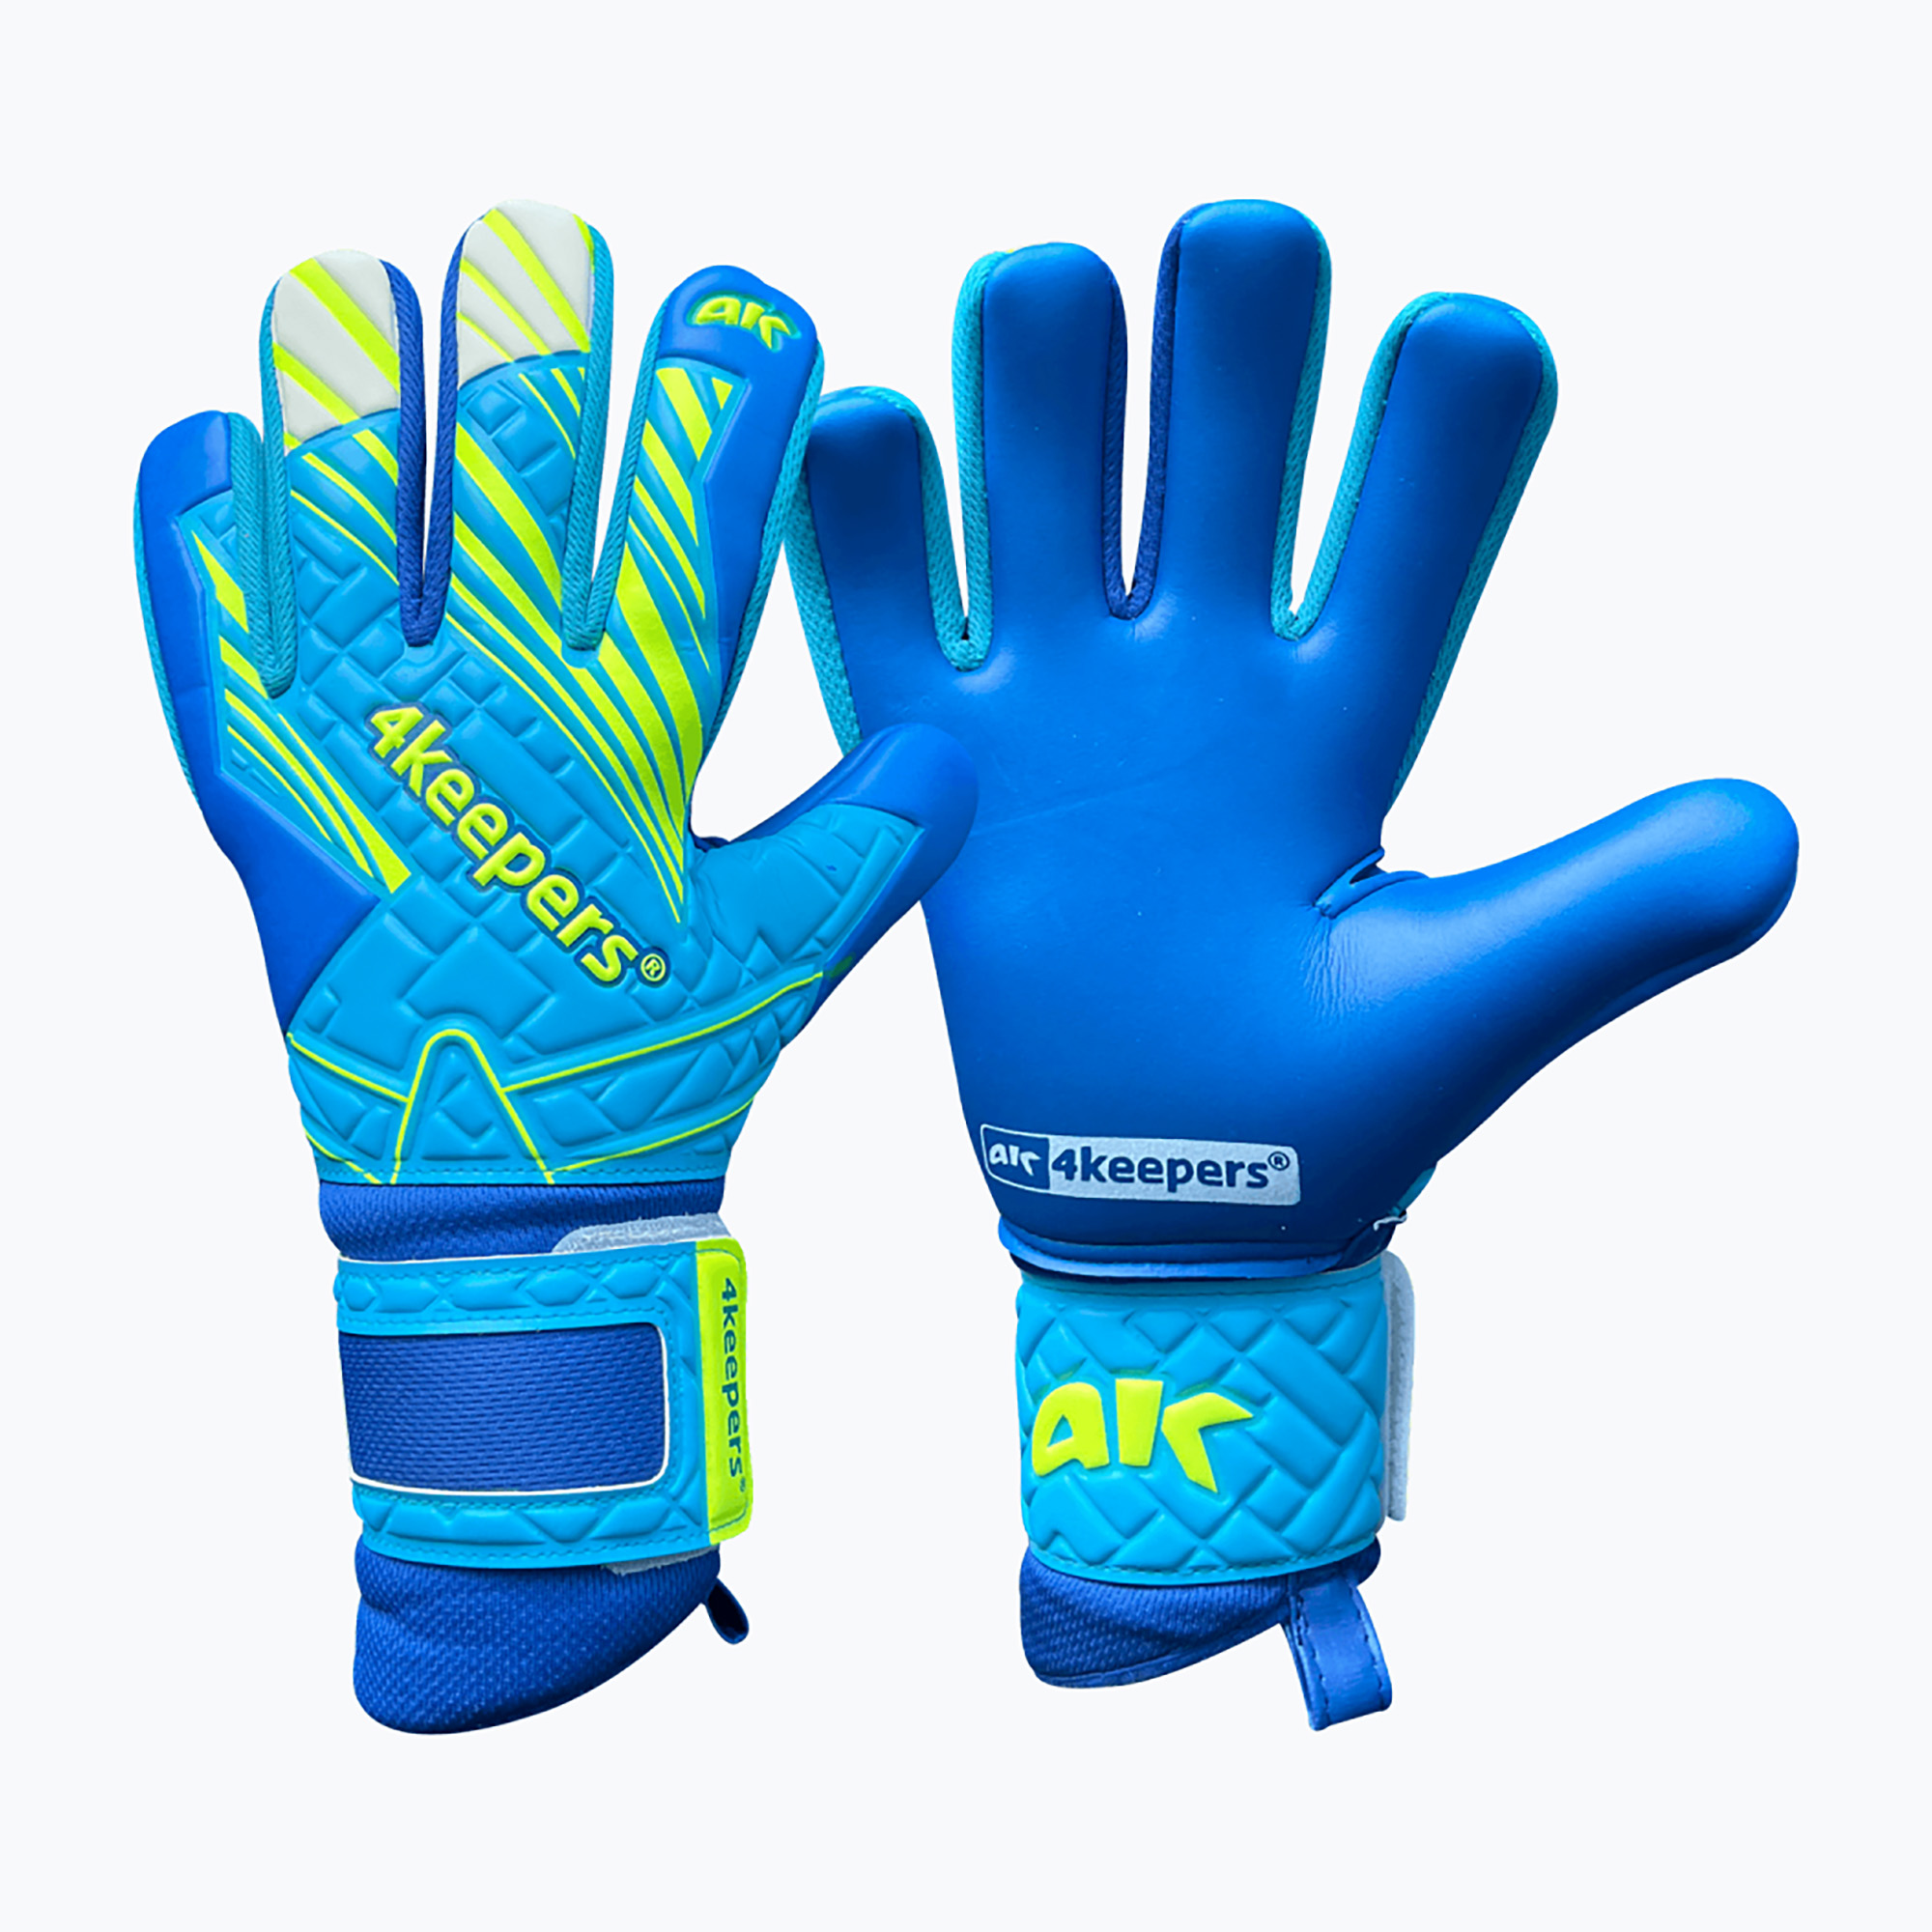 Mănuși de portar pentru copii  4keepers Soft Azur NC Jr albastru